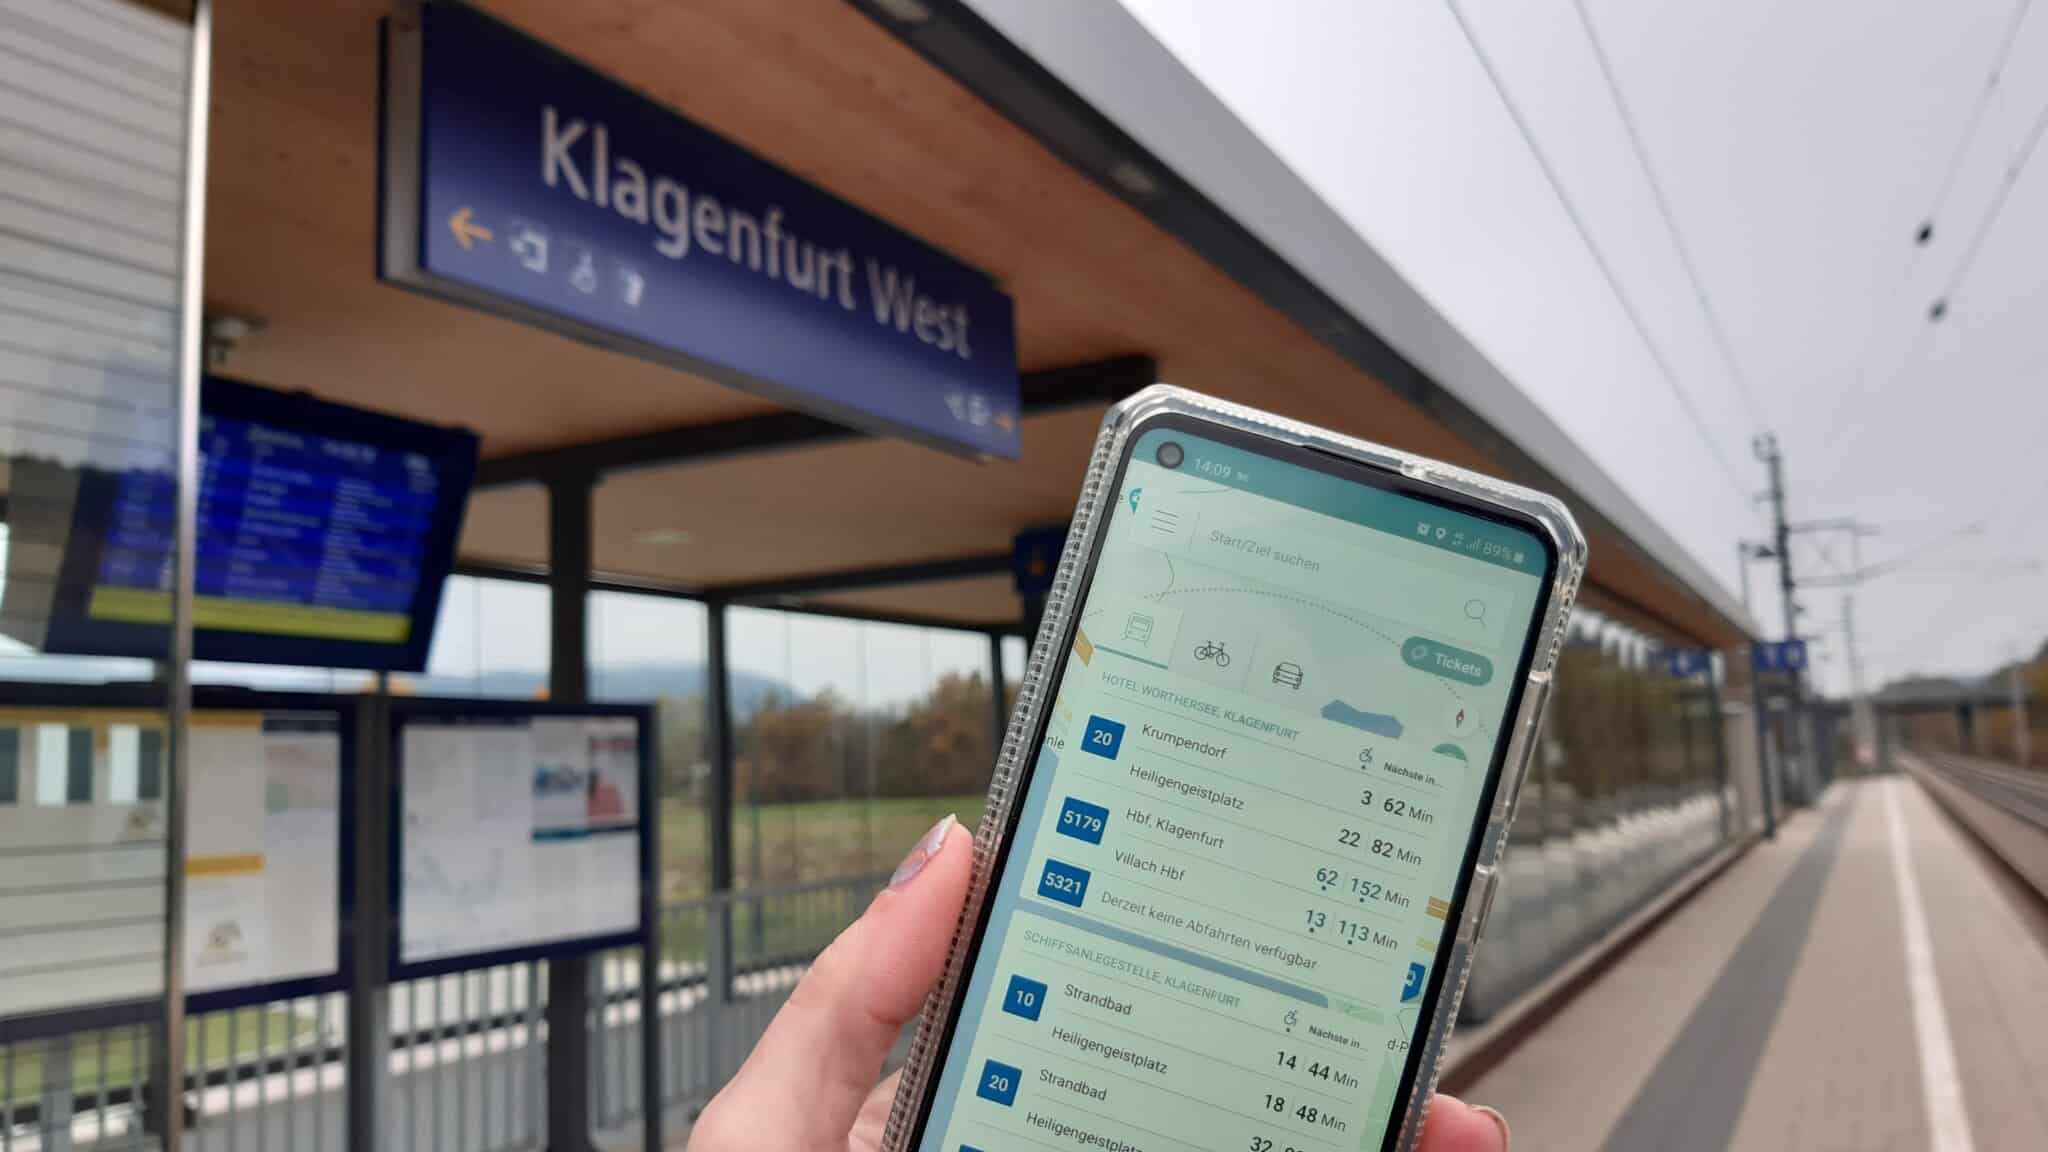 Klagenfurt Mobil zeigt auch die Bahnverbindungen der ÖBB an.